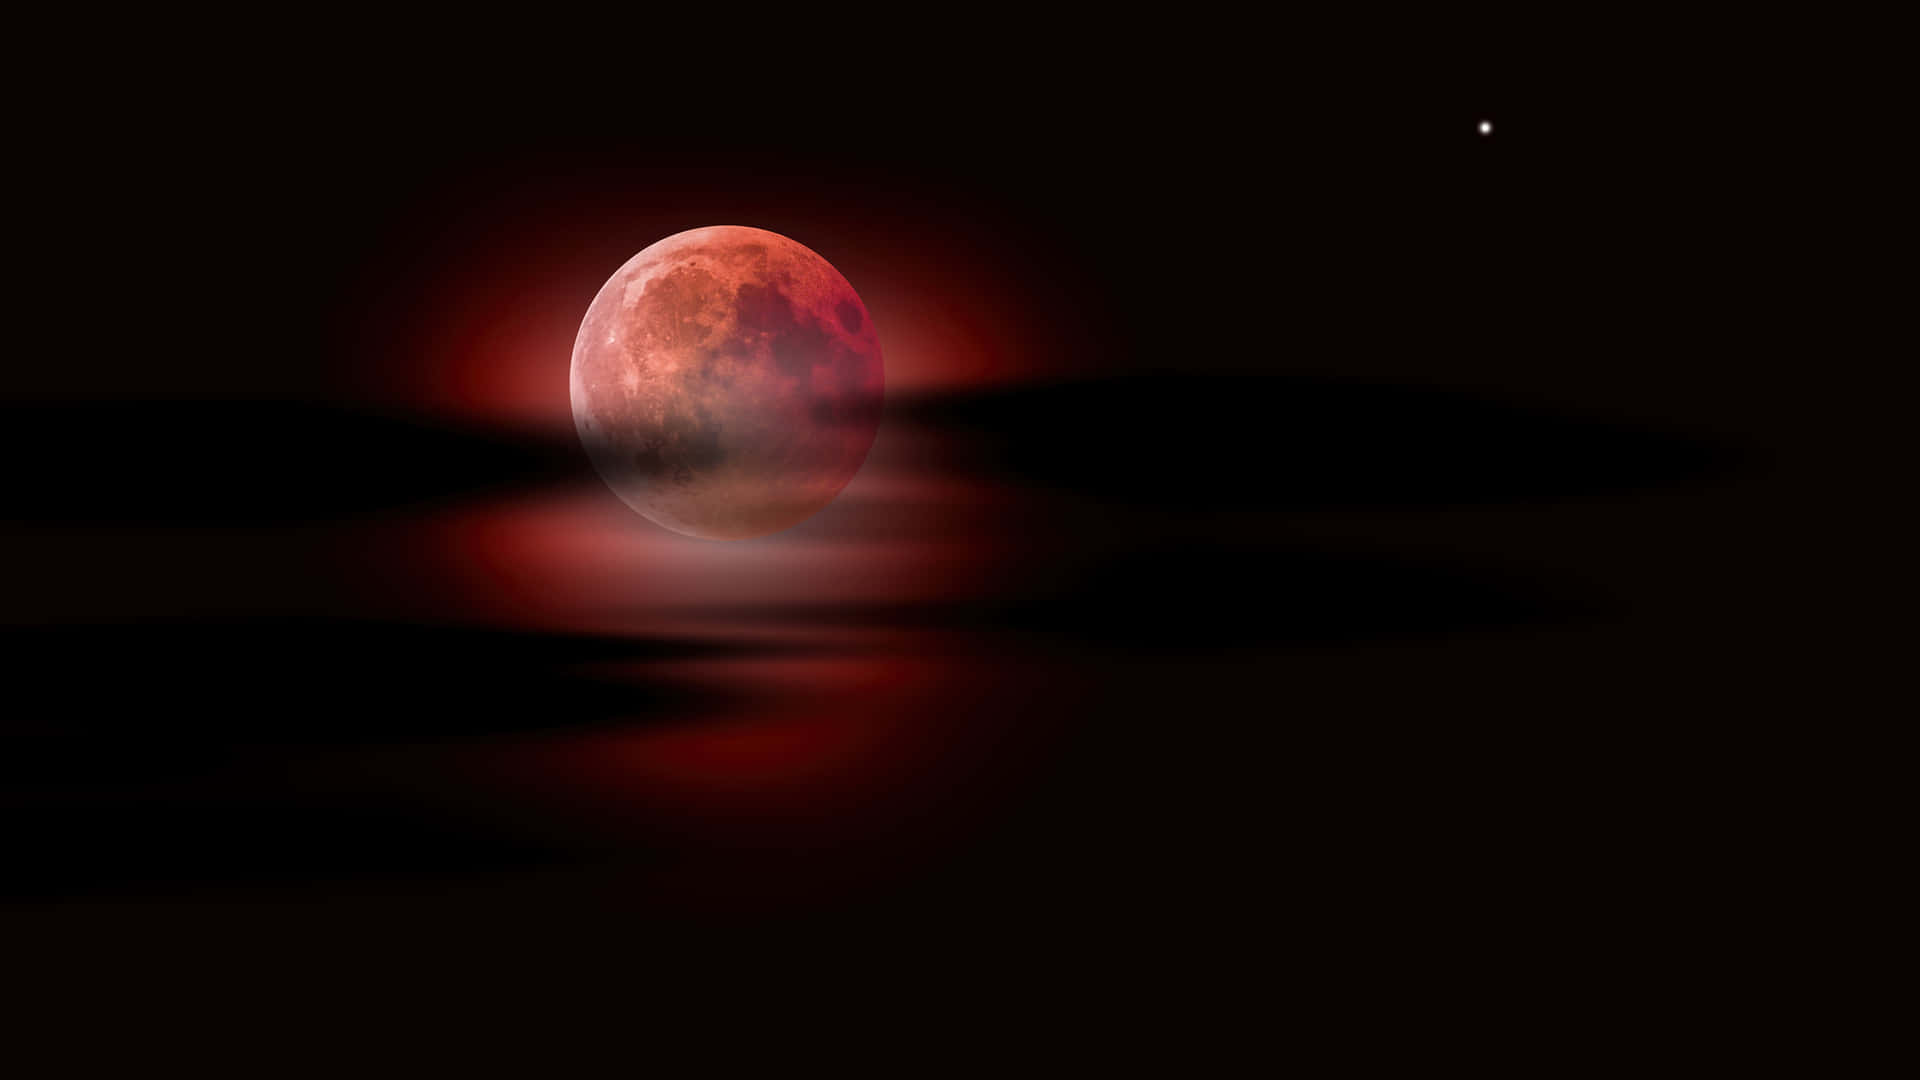 Cielonocturno Luna Eclipse Lunar Fondo de pantalla